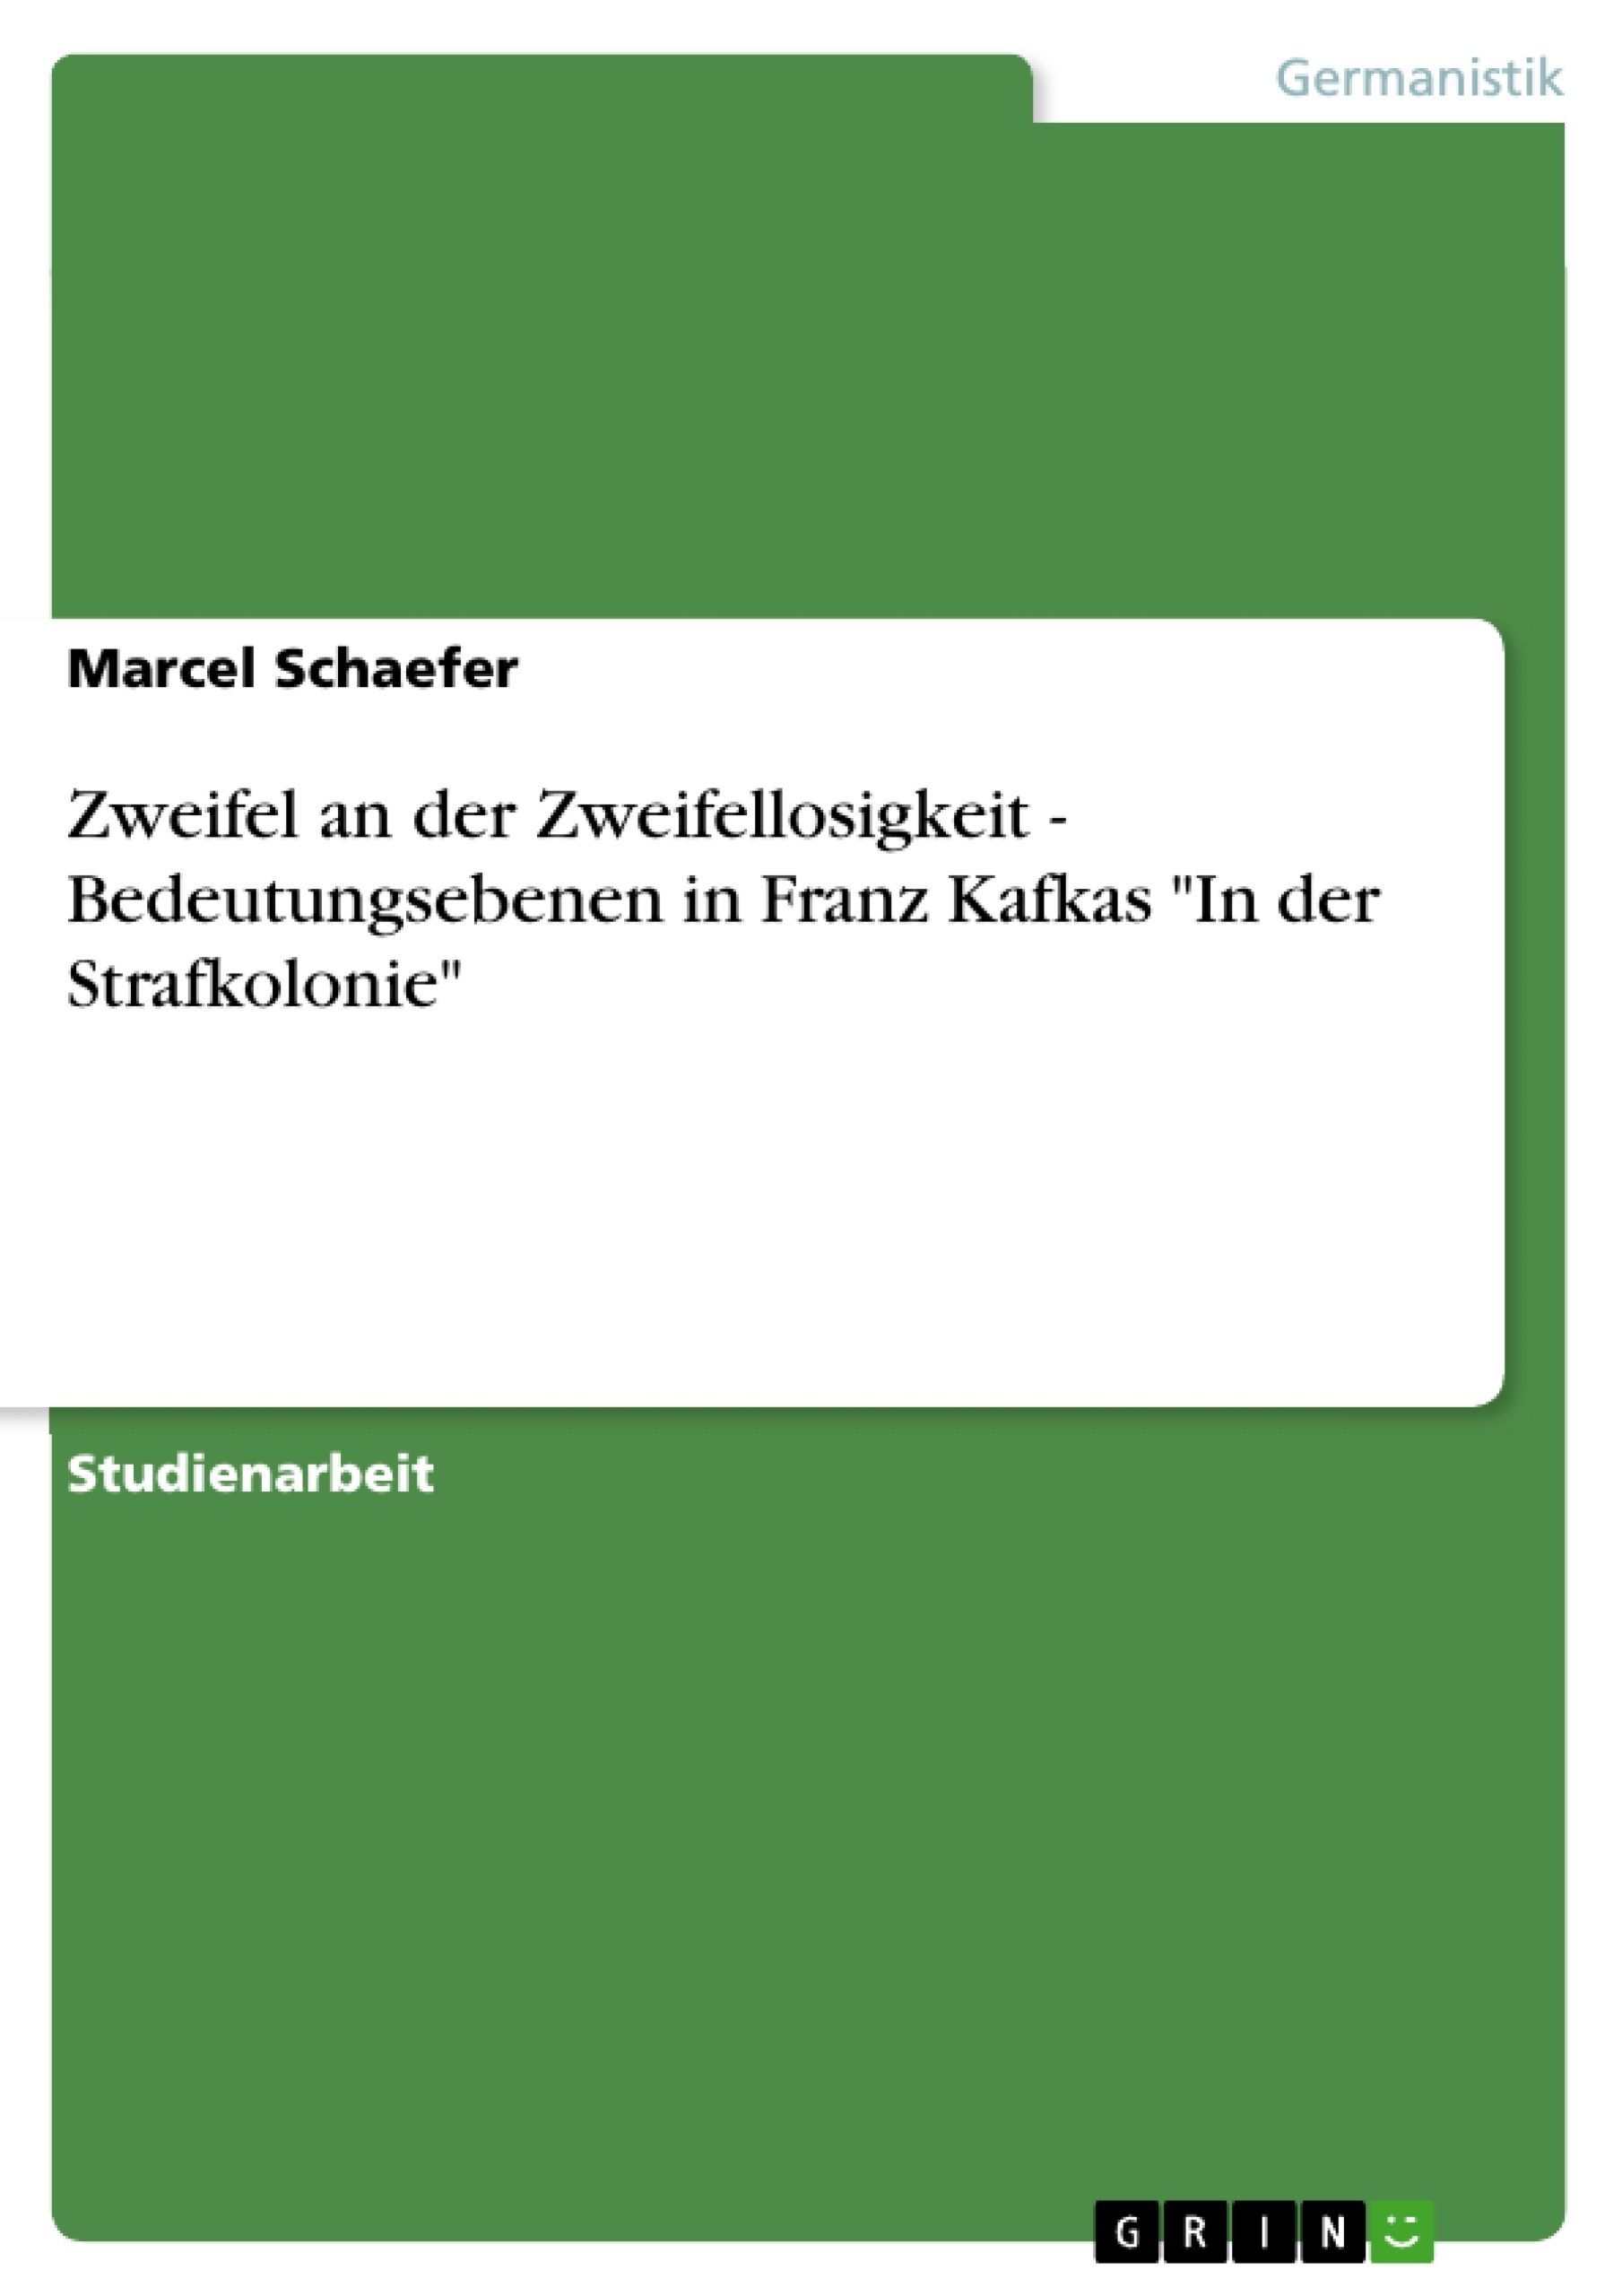 Título: Zweifel an der Zweifellosigkeit - Bedeutungsebenen in Franz Kafkas "In der Strafkolonie"